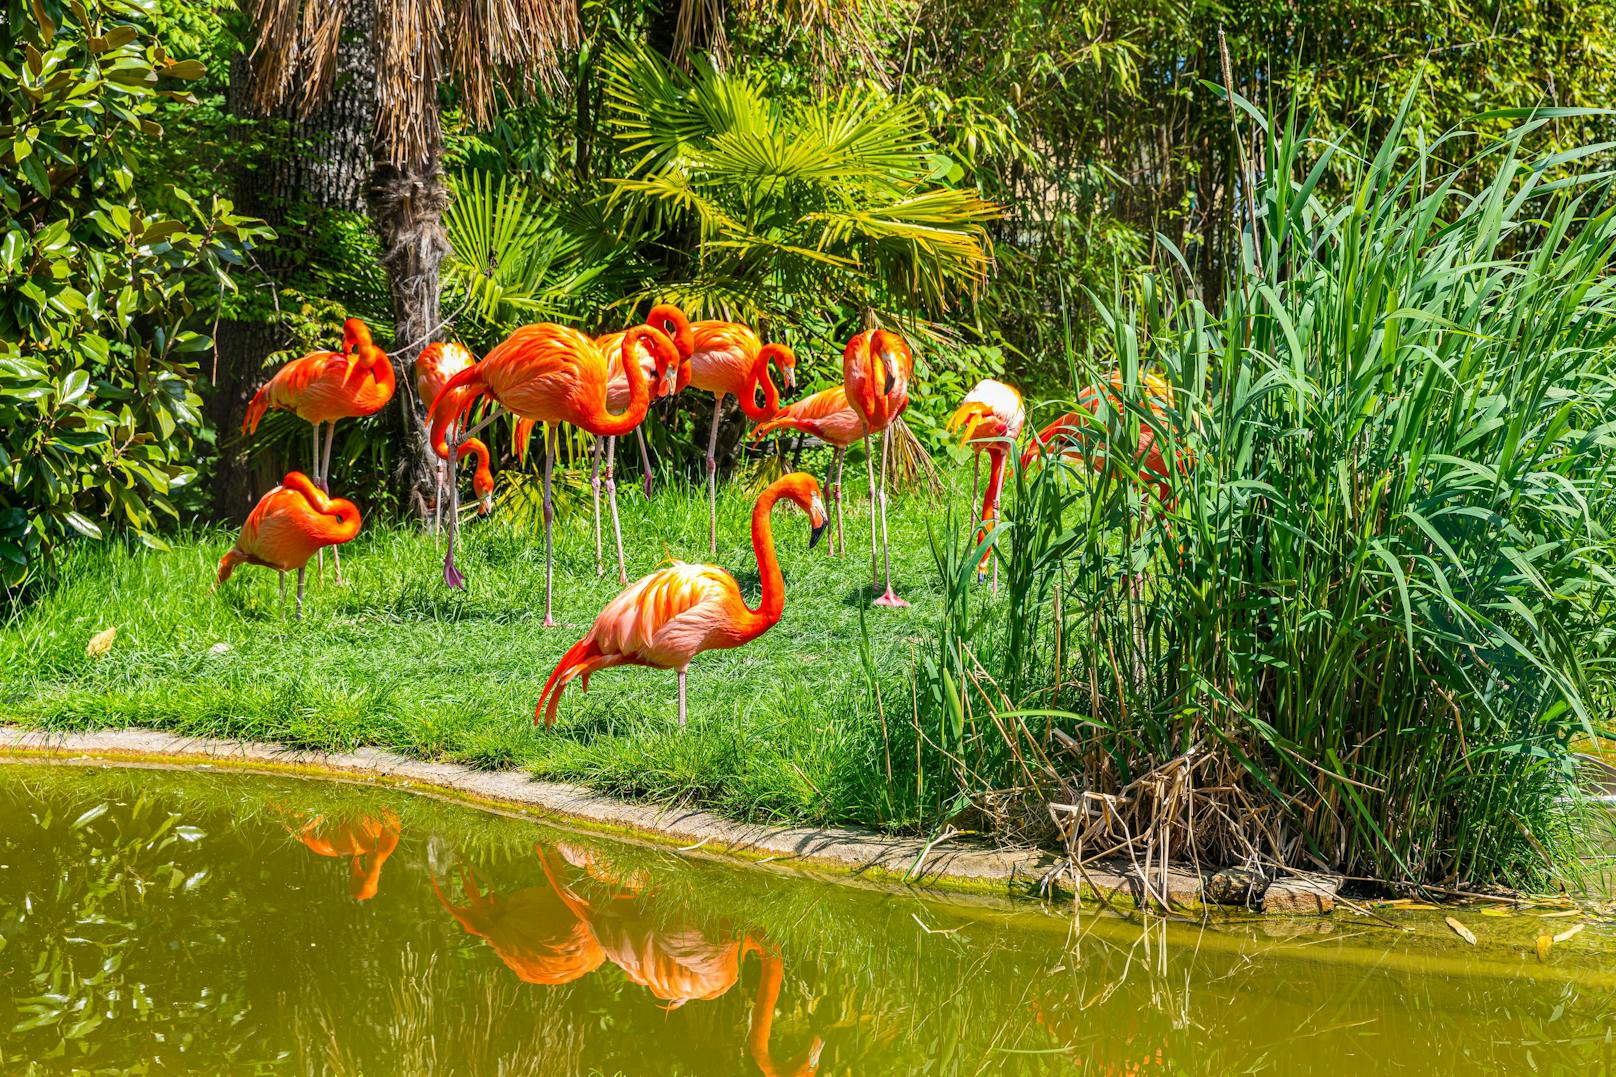 Fuchs tötete 13 Flamingos im Tiergarten Schönbrunn